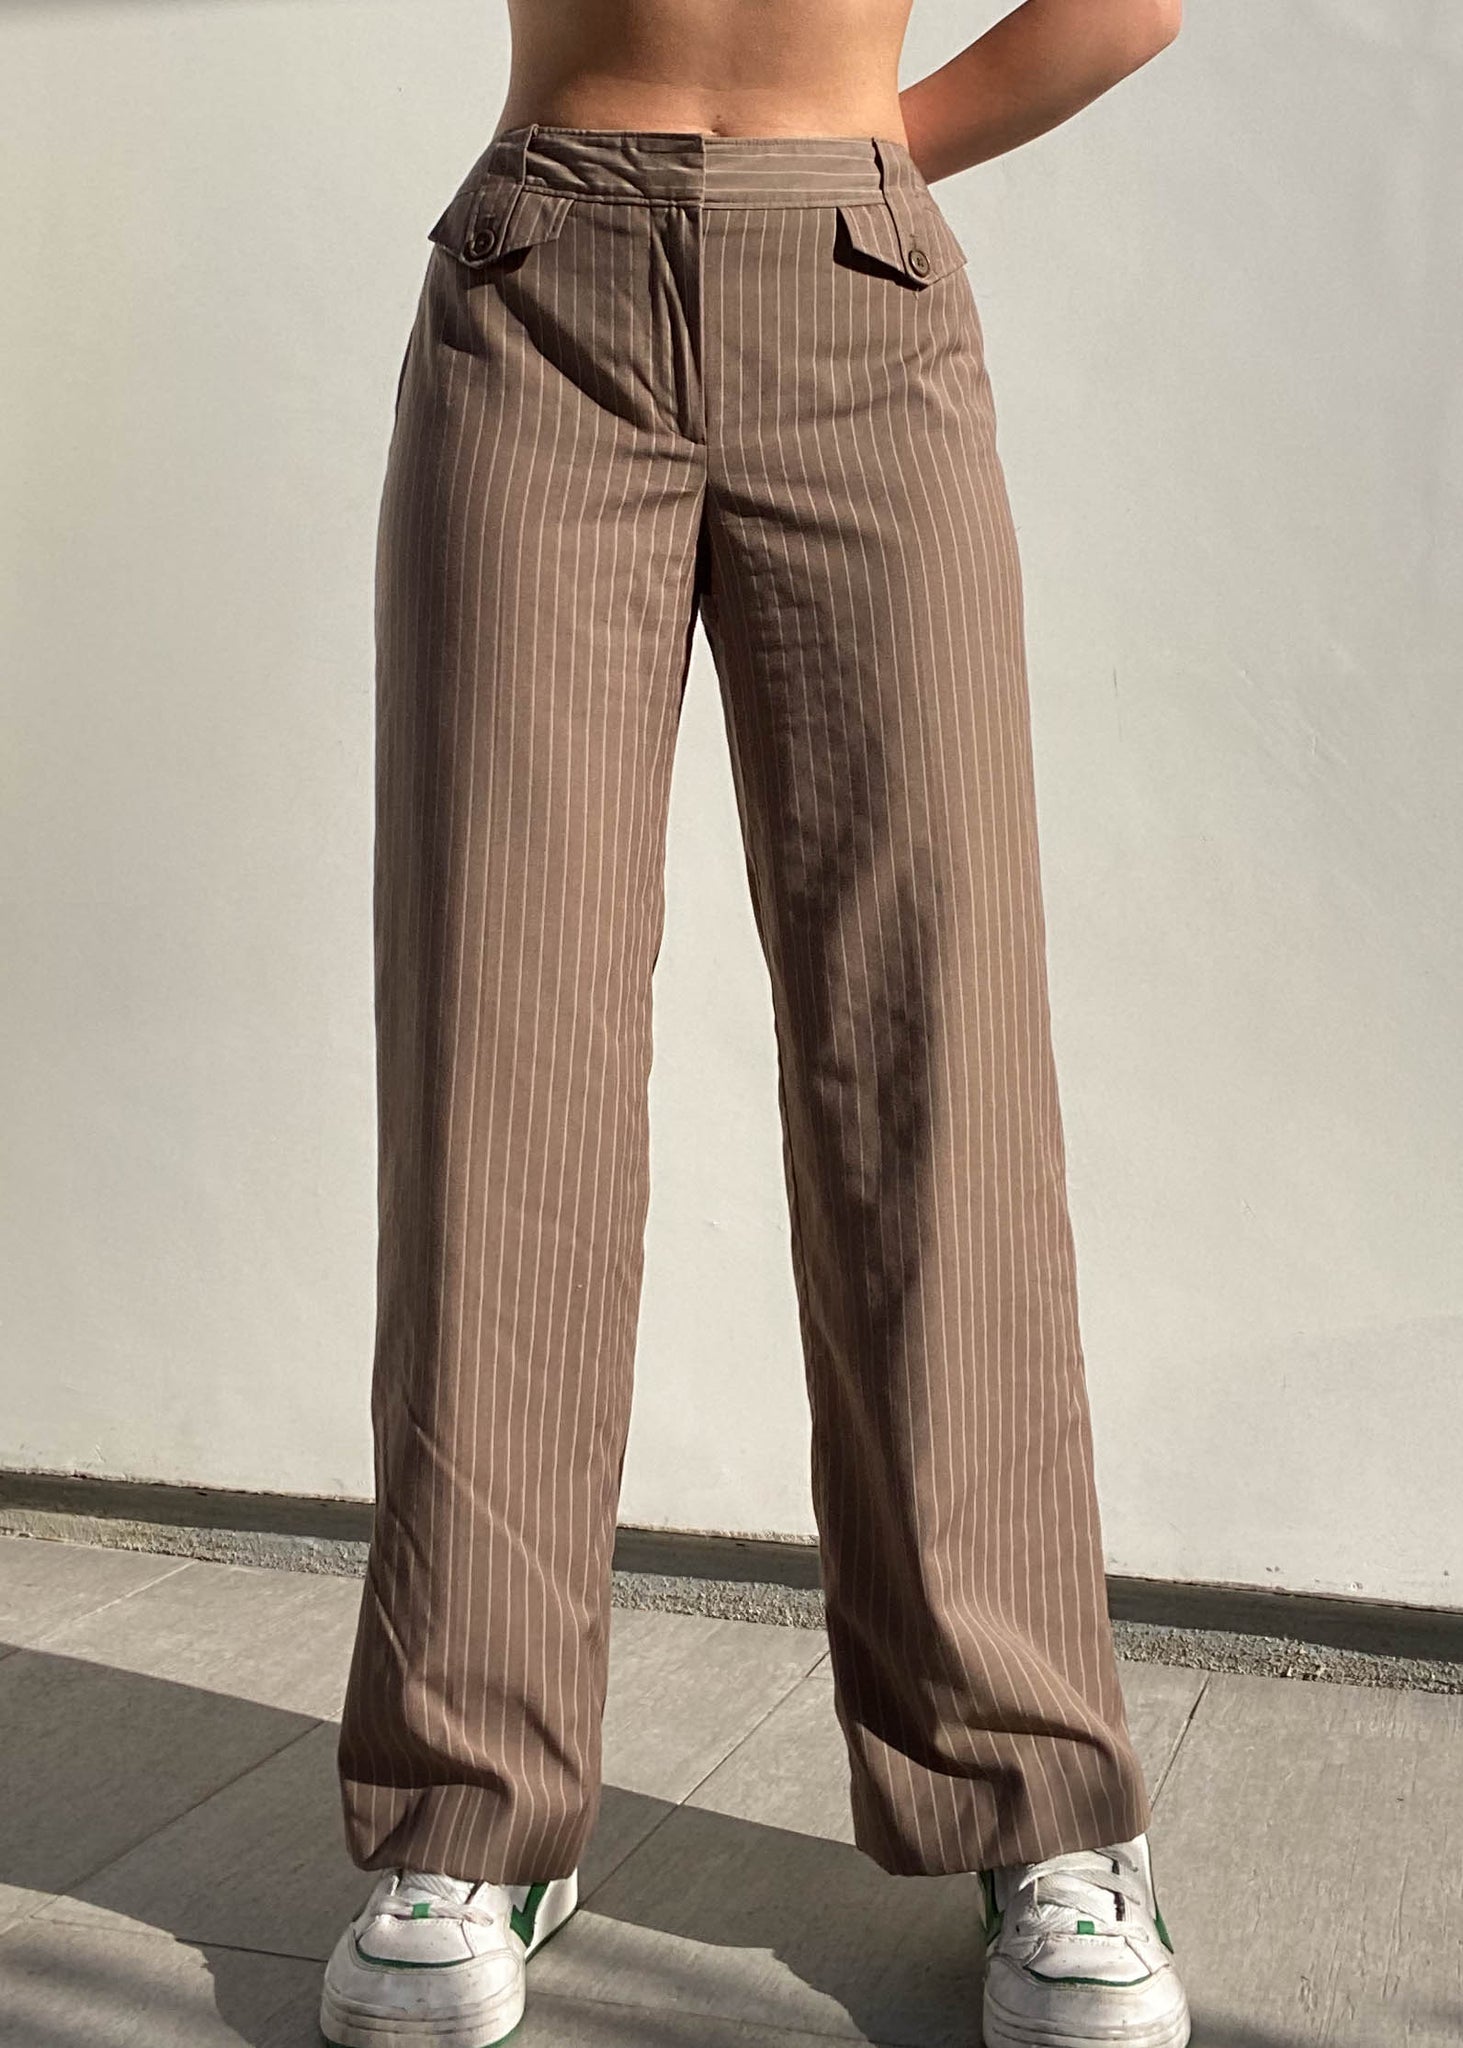 Hazelnut Pinstripe Trousers (Sz 6)